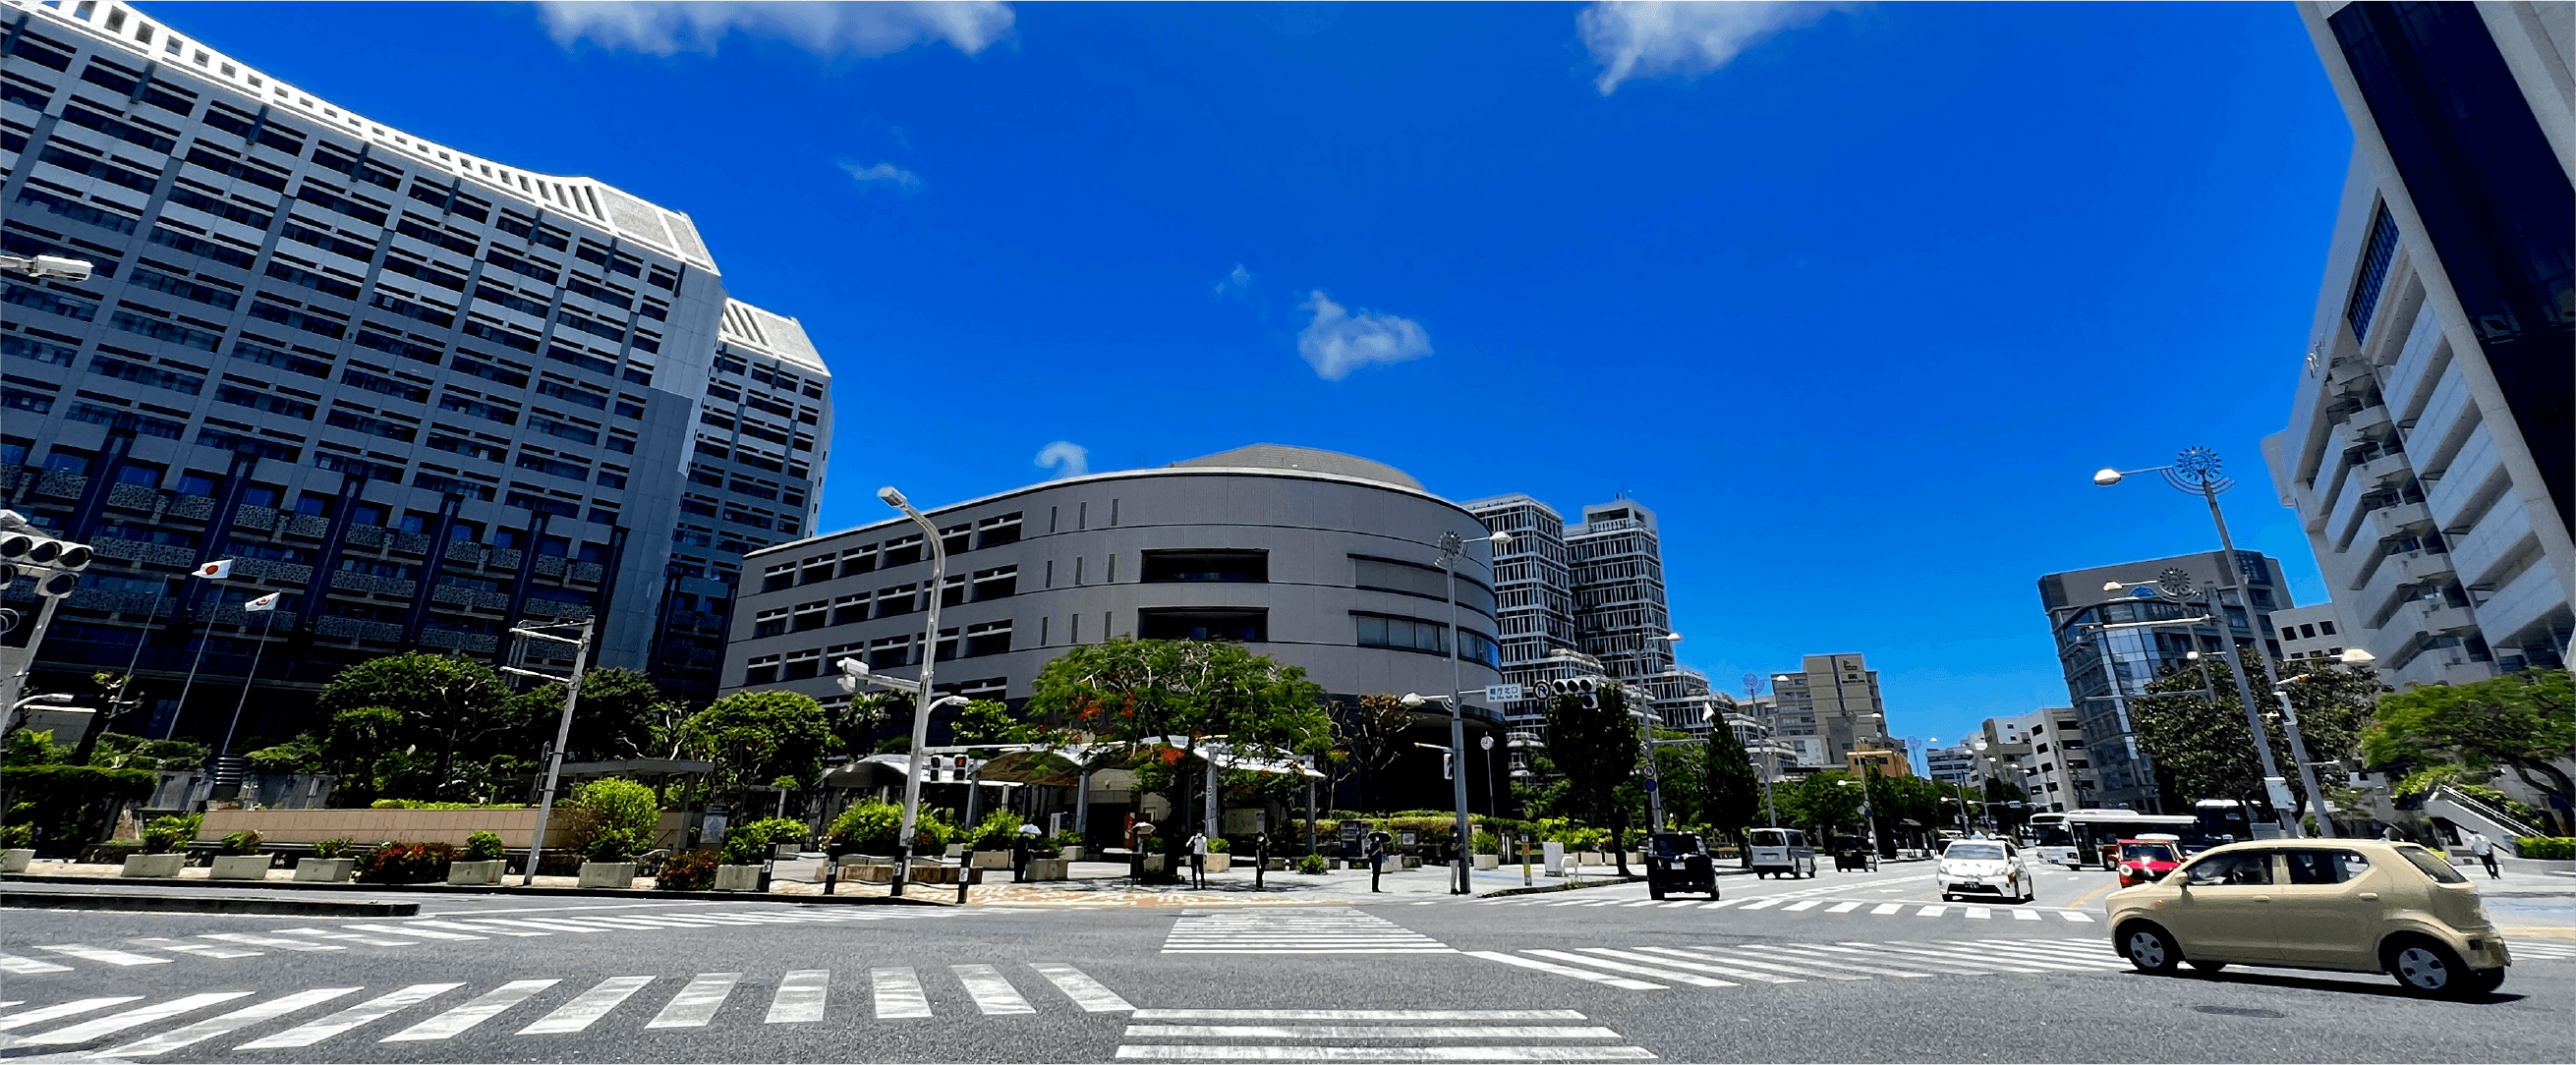 沖縄県庁所在地周辺の風景